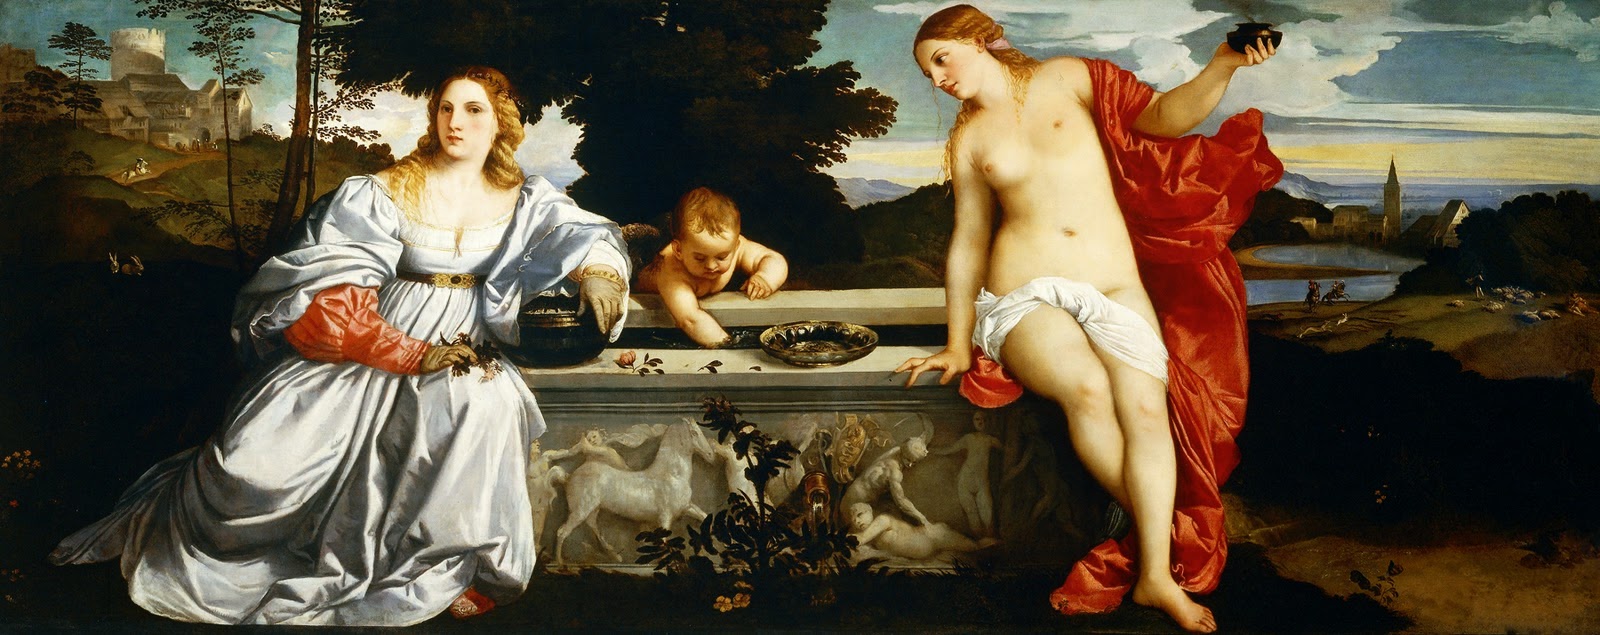 Amor sacro e profano foi pintado por Titiano por volta de 1515.